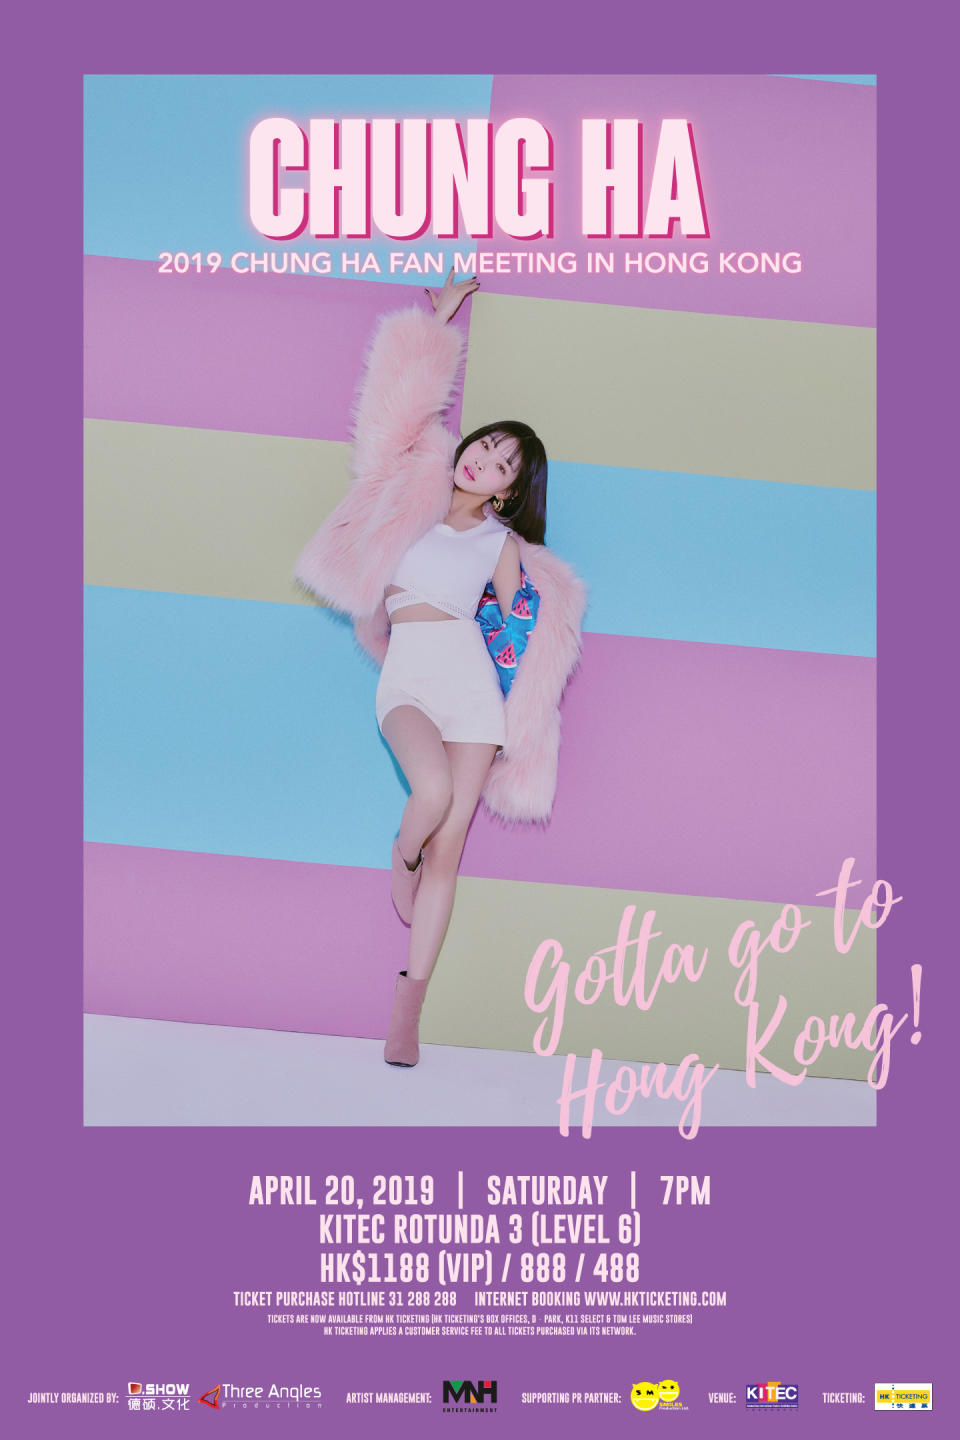 請夏日前宣佈將於4月20日（六）假九龍灣國際展貿中心Rotunda3舉行「2019 CHUNG HA FAN MEETING IN HONG KONG」。這將會是金請夏首次在香港進行粉絲見面會，與一眾香港的BYULHARANG（金請夏粉絲官方名）見面，齊齊歡度復活節長假期。